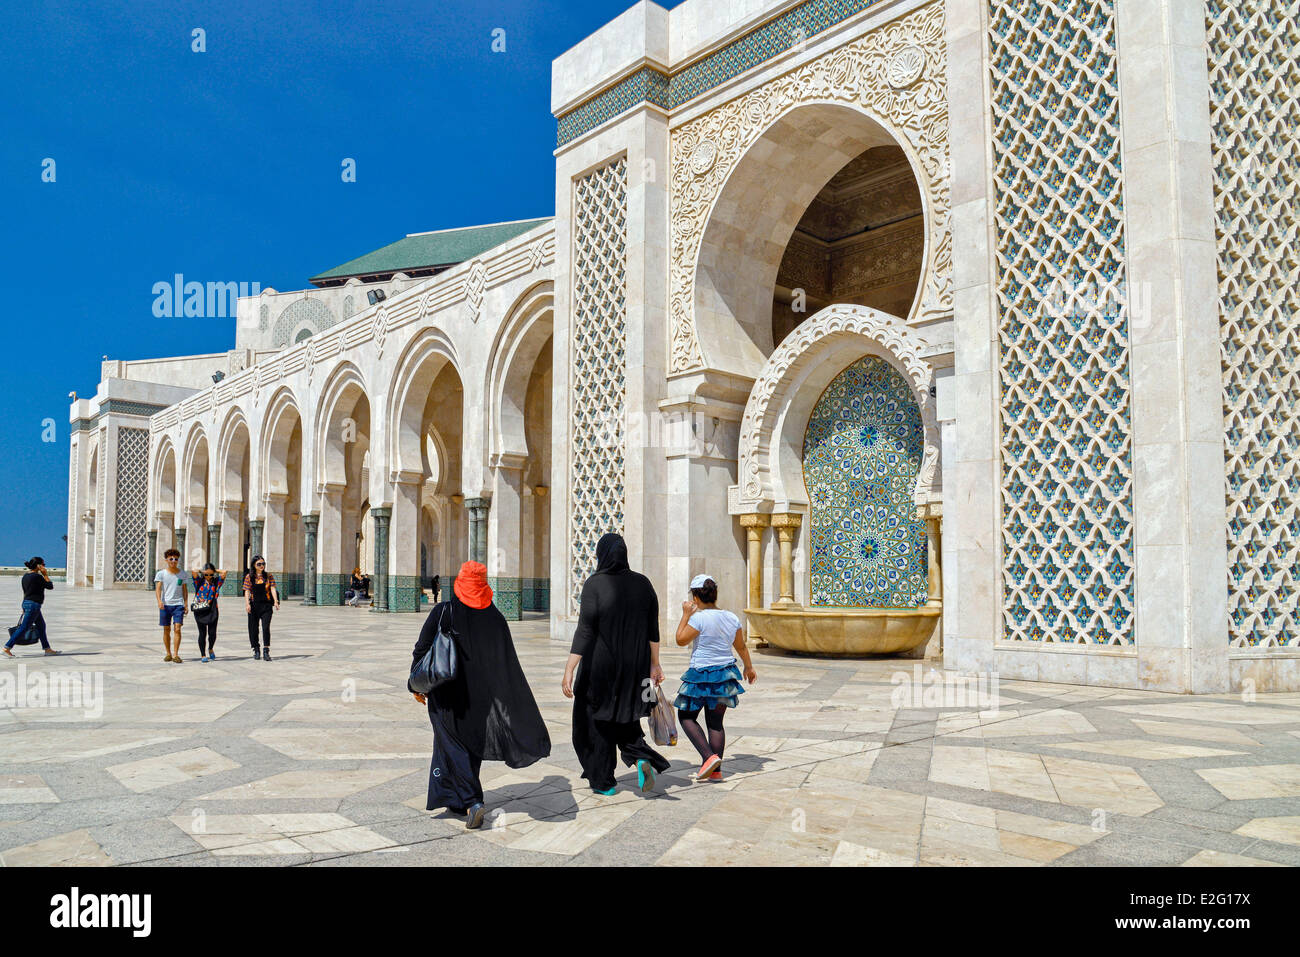 Marruecos Casablanca Gran Mezquita Hassan II, de estilo árabe musulmán construido por el arquitecto Michel Pinseau en 1986 mujeres veladas de Foto de stock